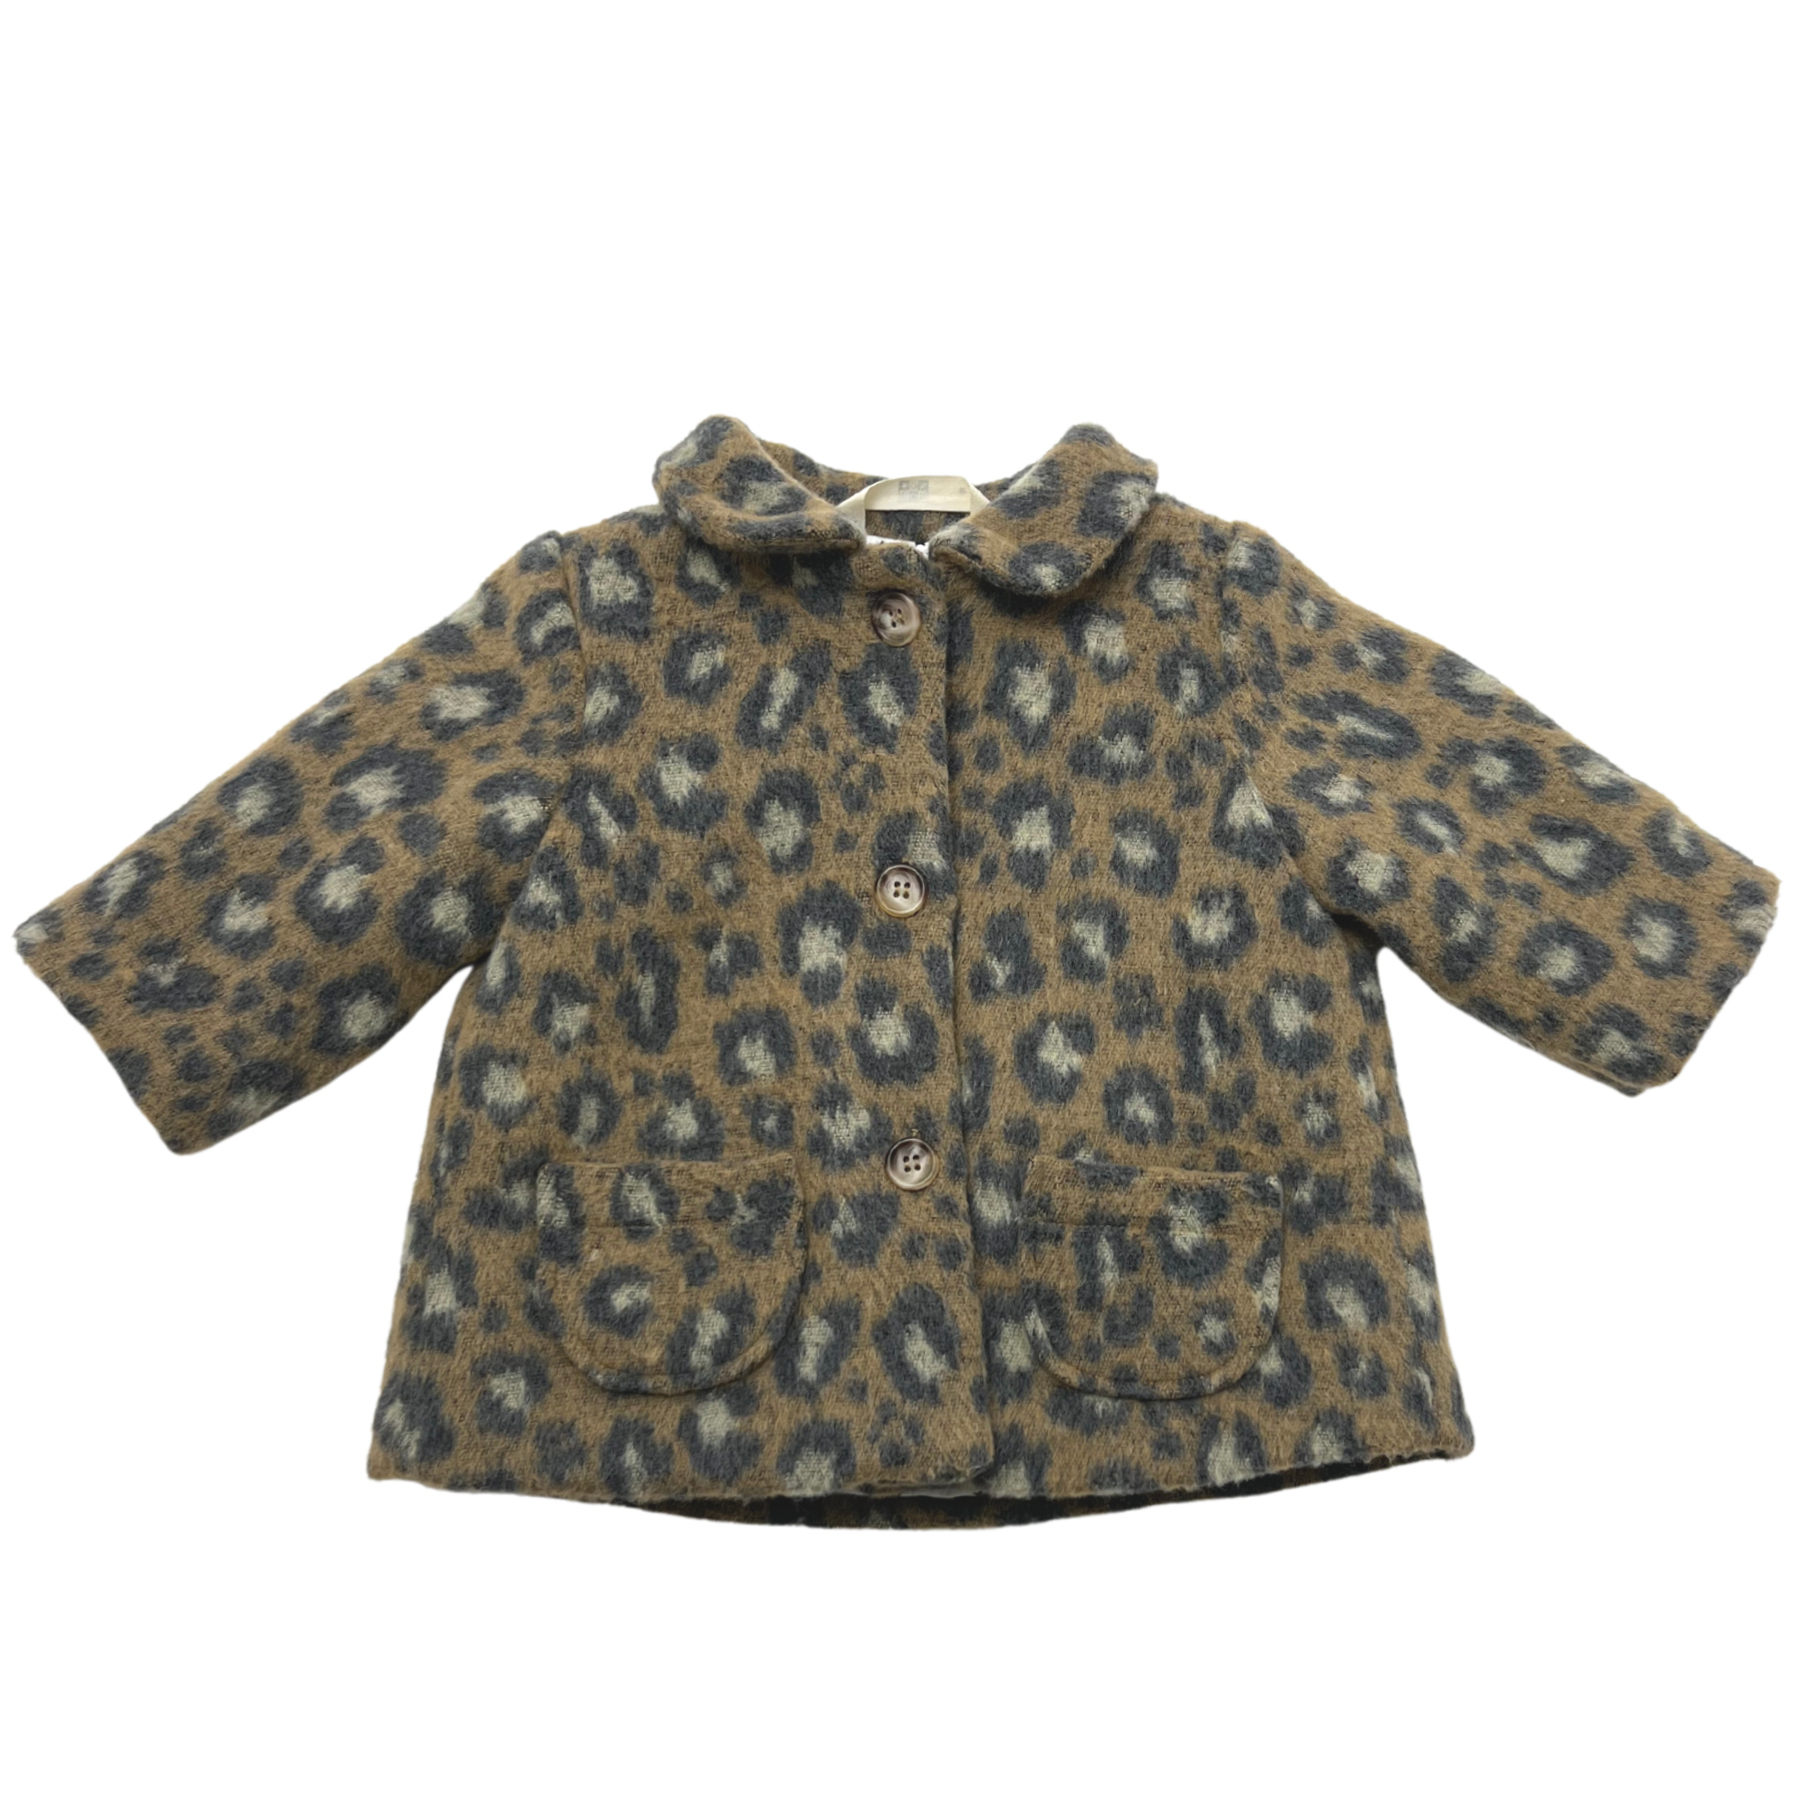 BONTON - Manteau léopard - 6 mois